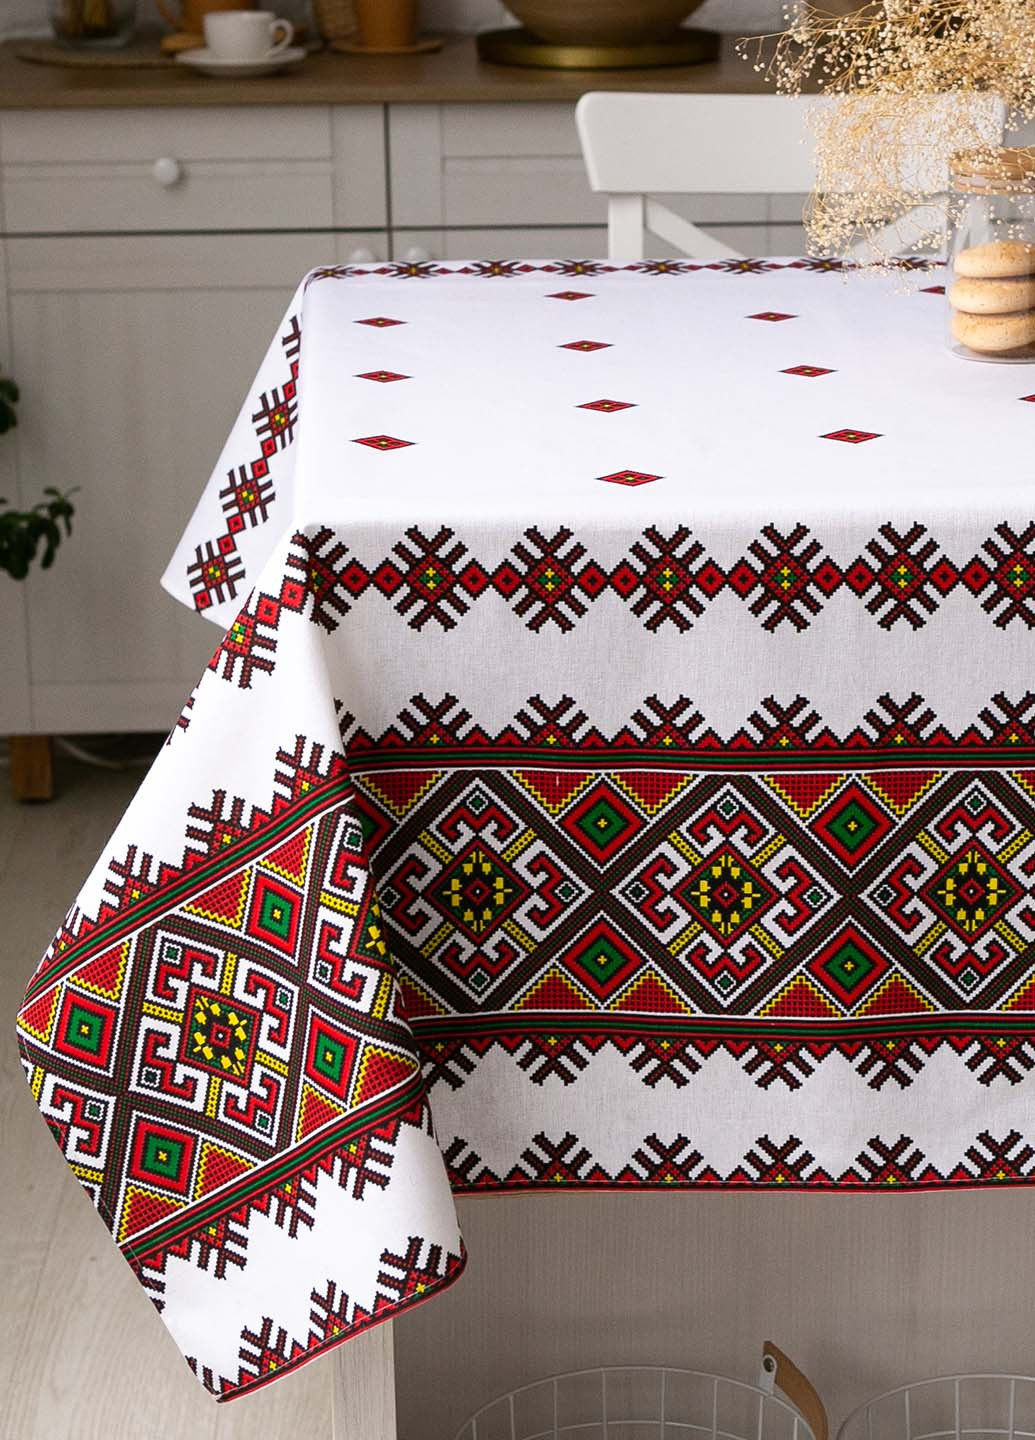 Скатерть традиция "Орнамент красный" 1.5м х 1.1м (кухонный стол) Homedec - (258493311)